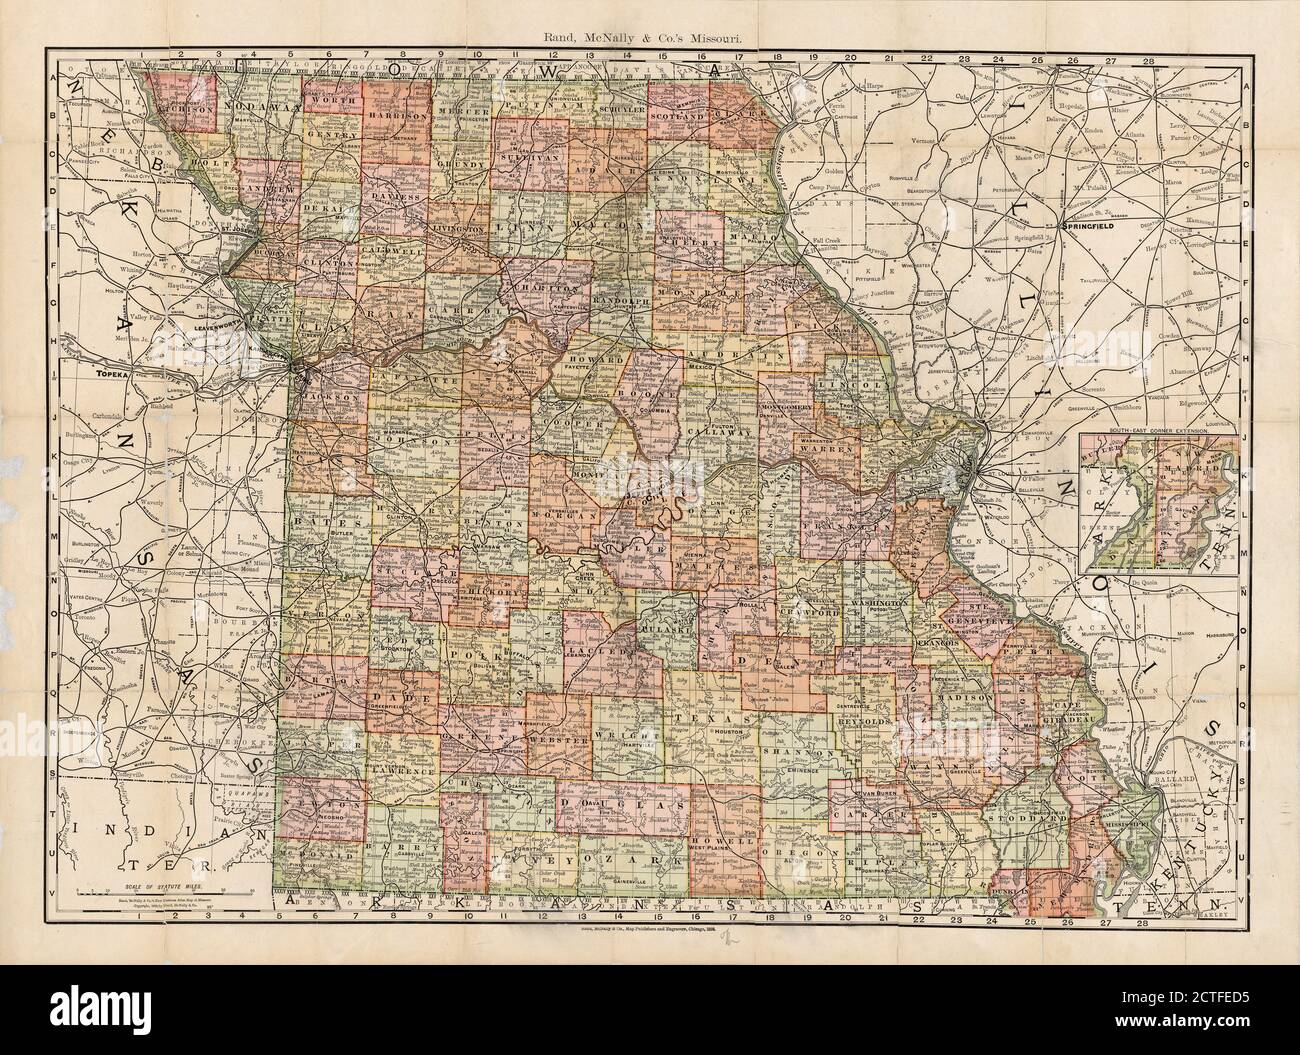 Rand, McNally & Co.'s Missouri, cartographic, Maps, 1892, Rand McNally and Company Stock Photo